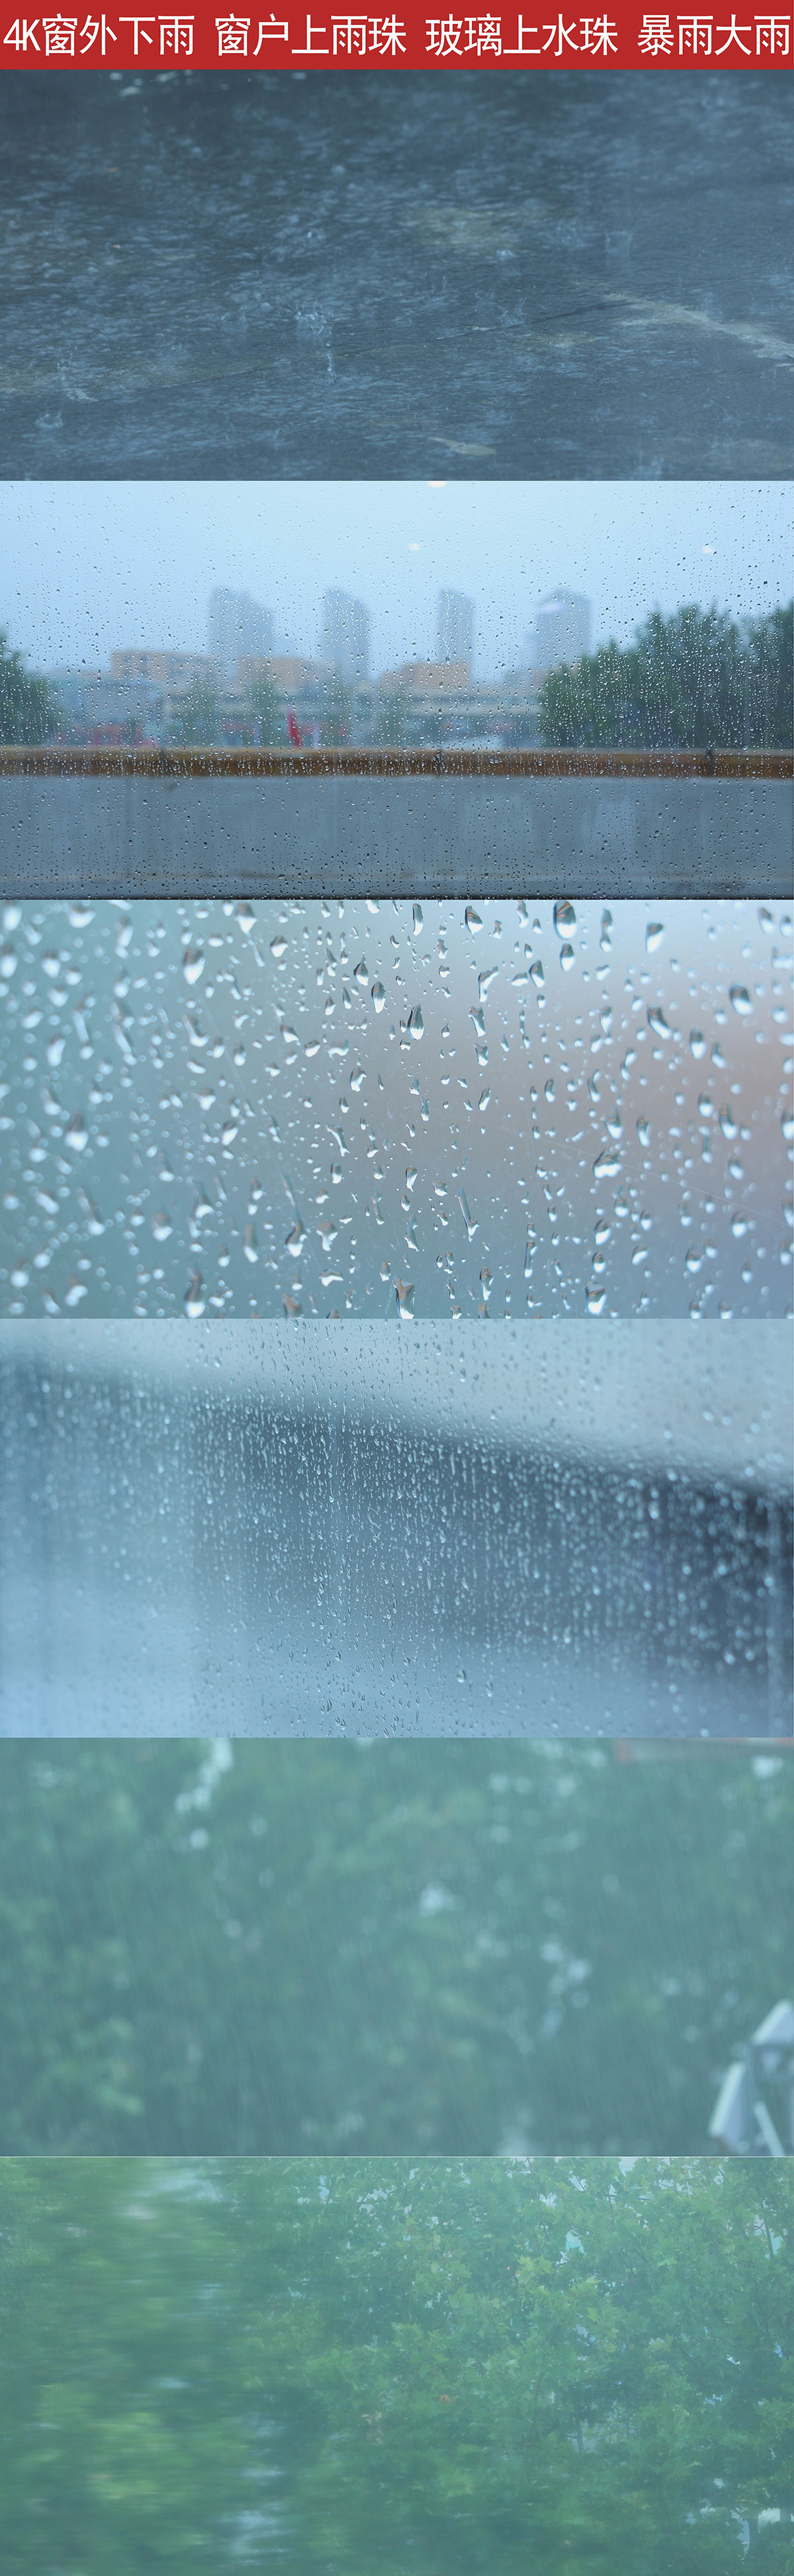 一组窗外下雨的镜头 可以用做纪录片视频空镜 情感类 孤独伤感等去